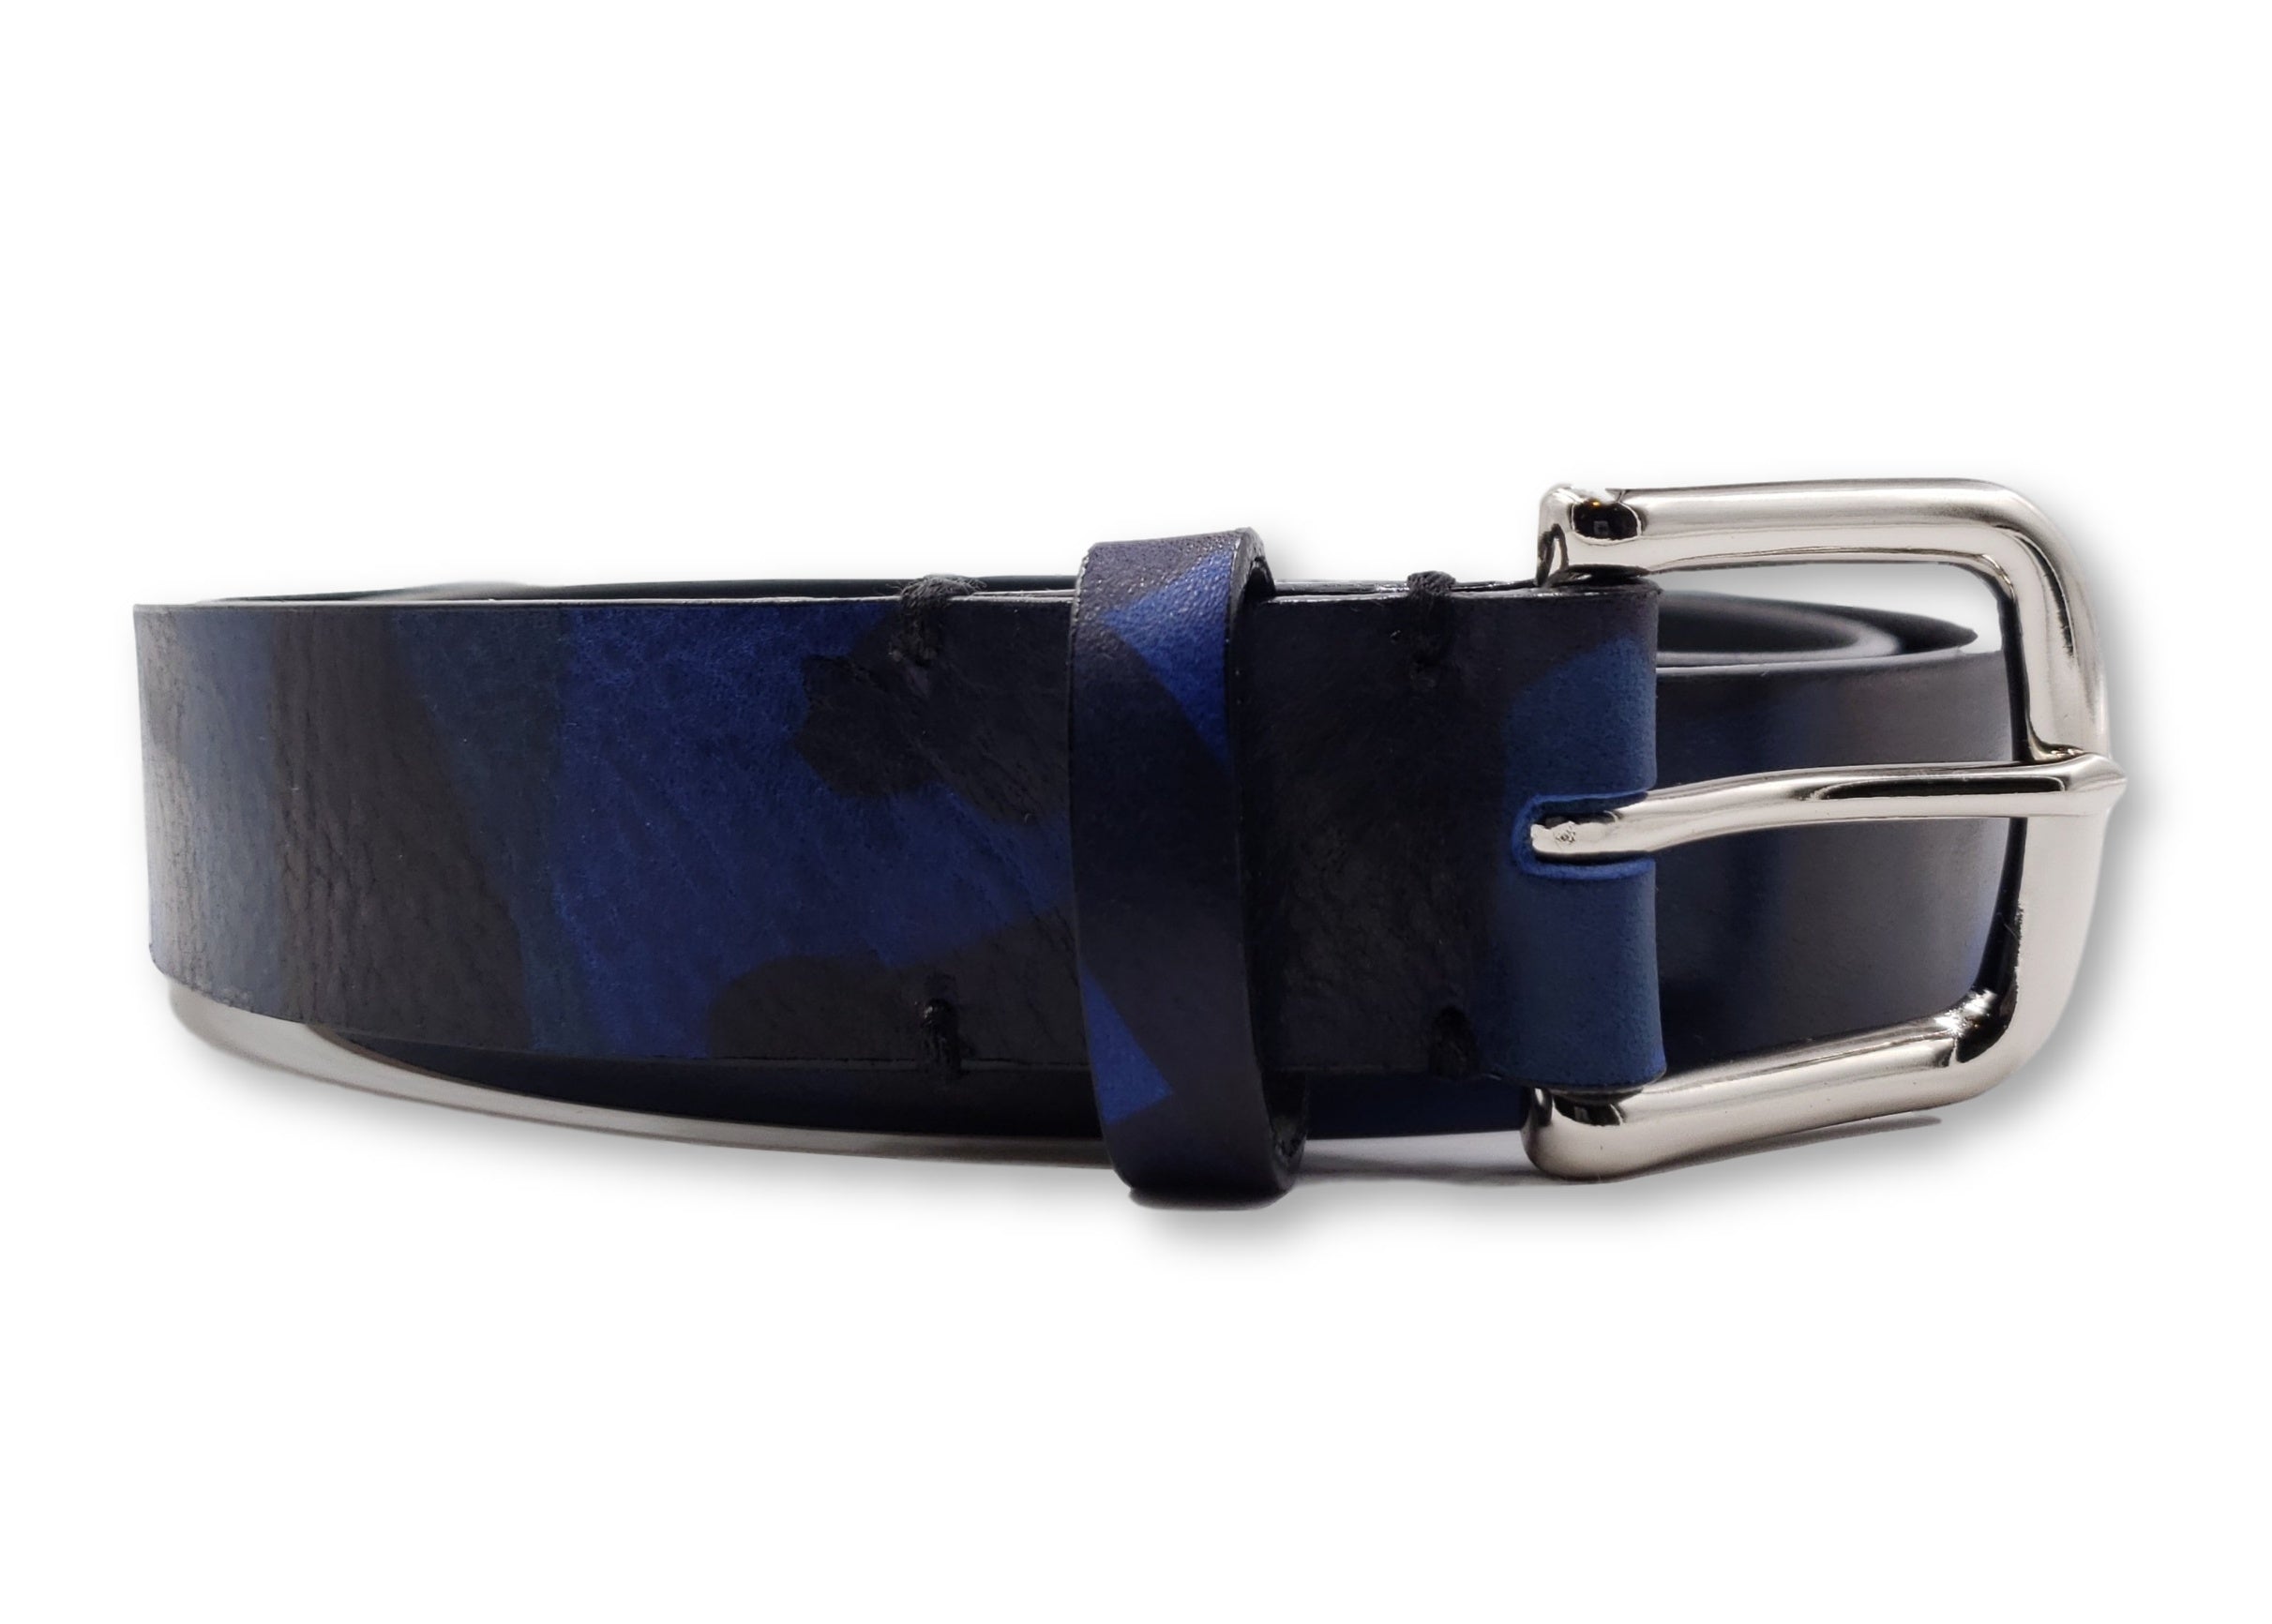 Subtle Blue & Black Leather Camouflage Belt - FH Wadsworth